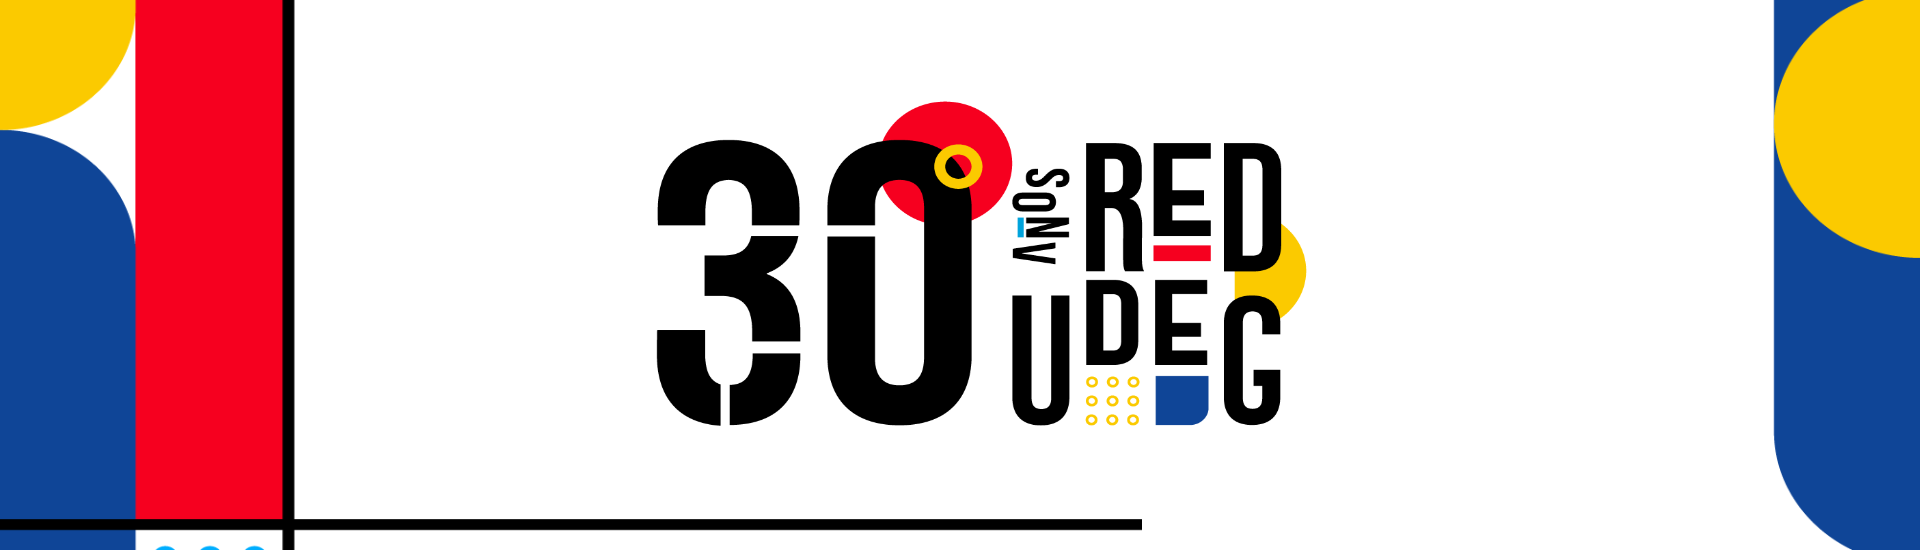 30 años de la Red UDG